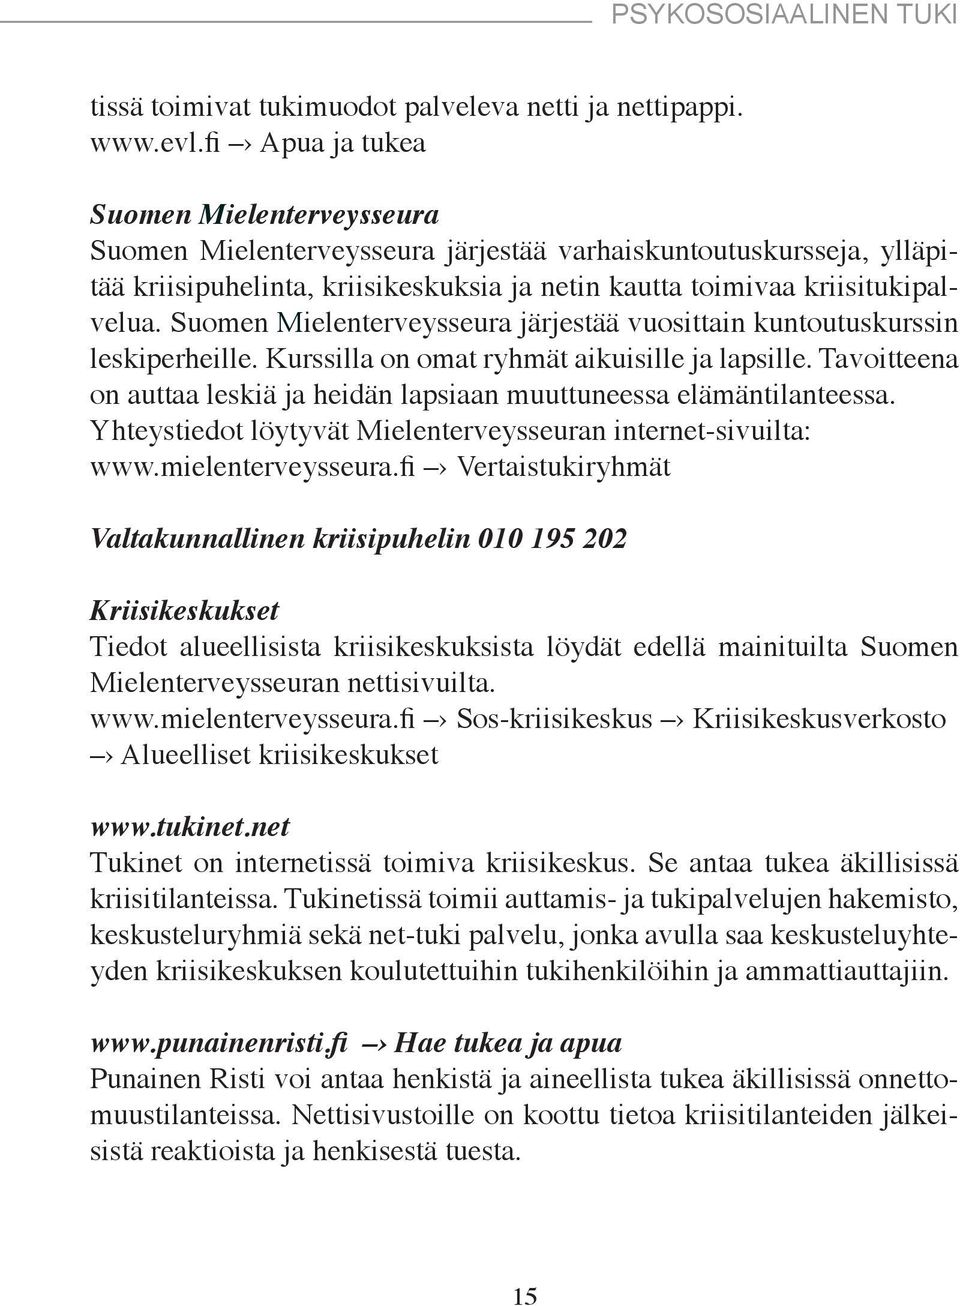 Suomen Mielenterveysseura järjestää vuosittain kuntoutuskurssin leskiperheille. Kurssilla on omat ryhmät aikuisille ja lapsille.